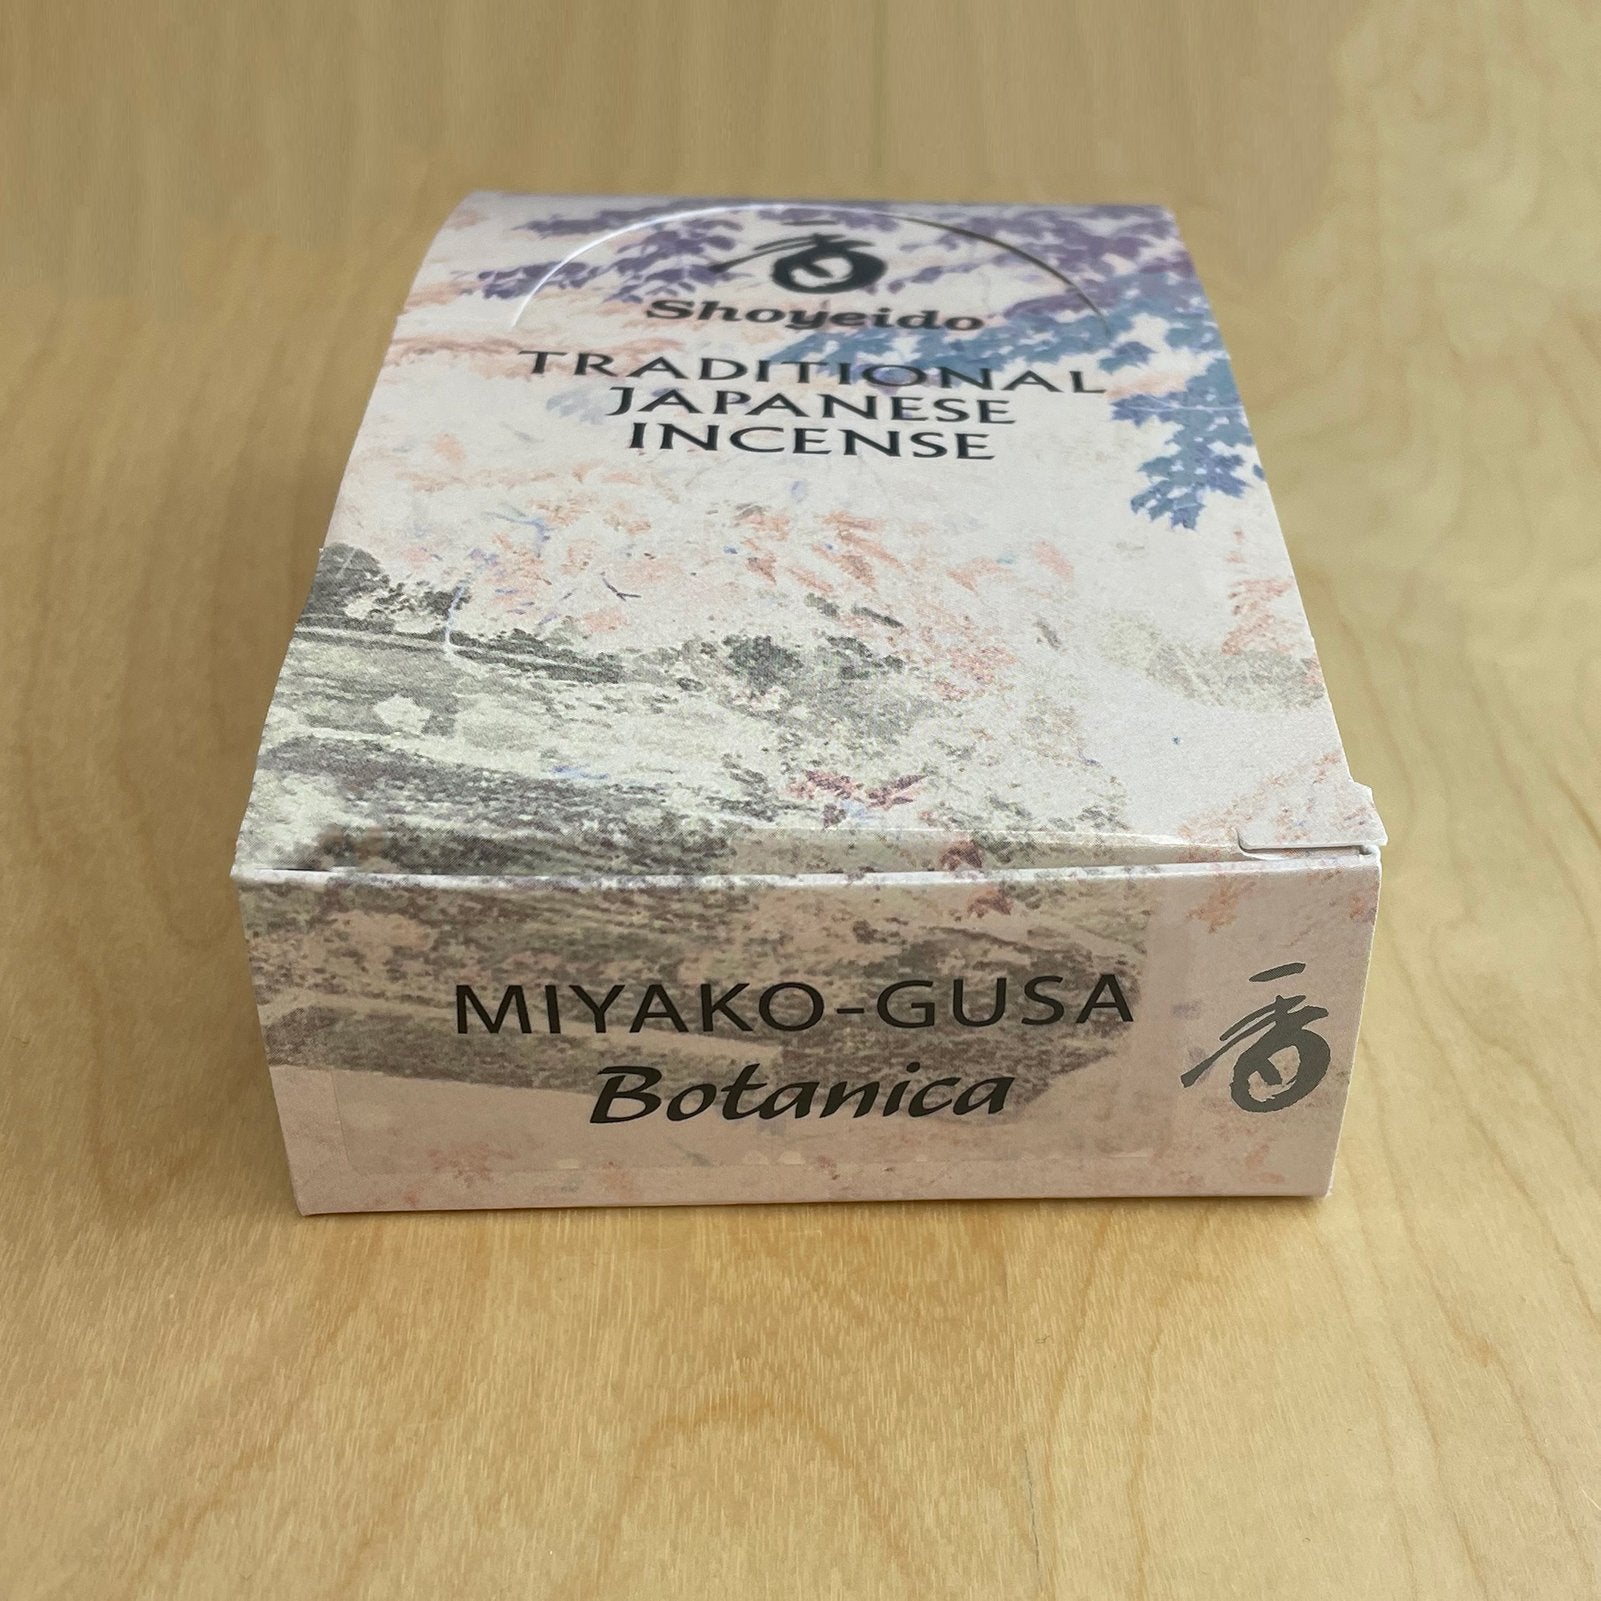 Botanica - Miyaku-gusa Incense_Lifestyle